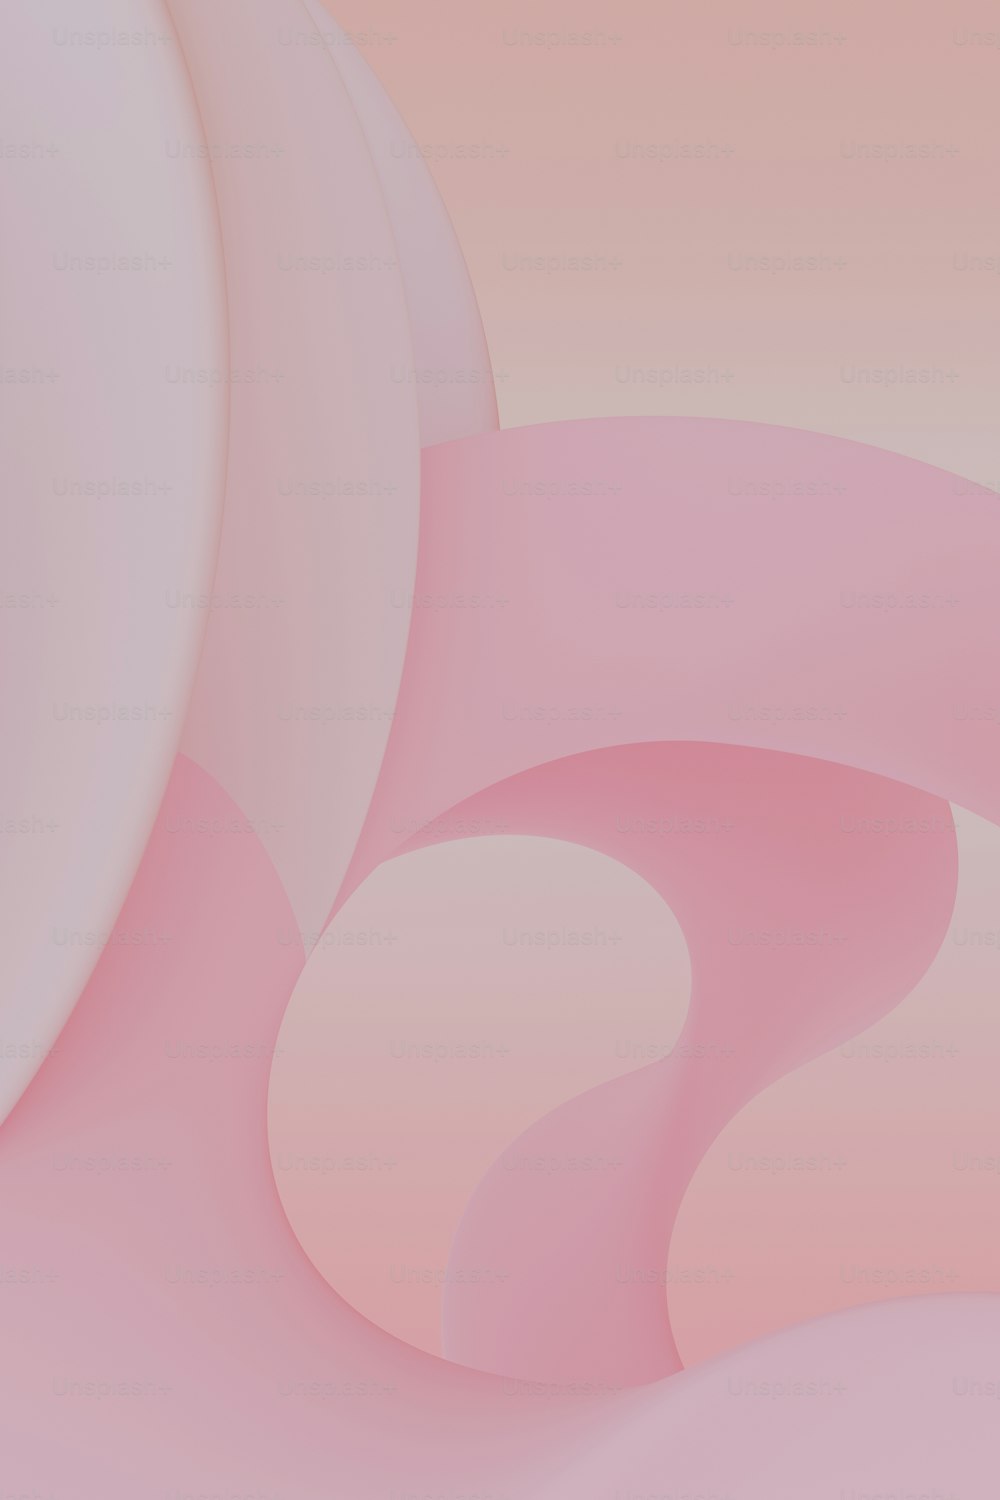 곡선 모양의 분홍색과 흰색 추상적인 배경